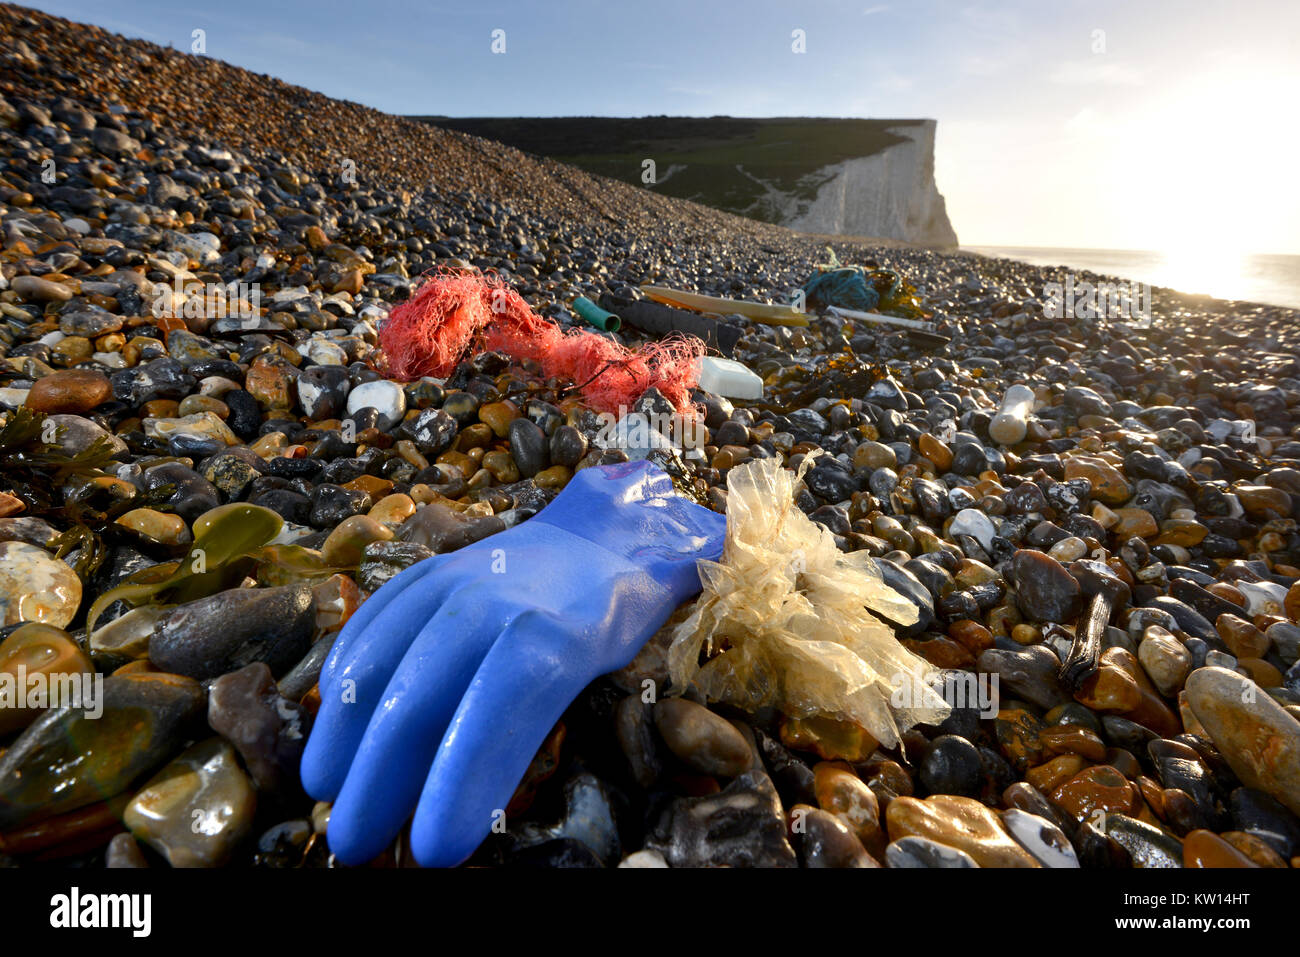 Plastik und Müll an einem Strand in der Nähe der berühmten Sieben Schwestern Kreidefelsen im südlichen England, Cuckmere Haven, East Sussex, UK. Stockfoto